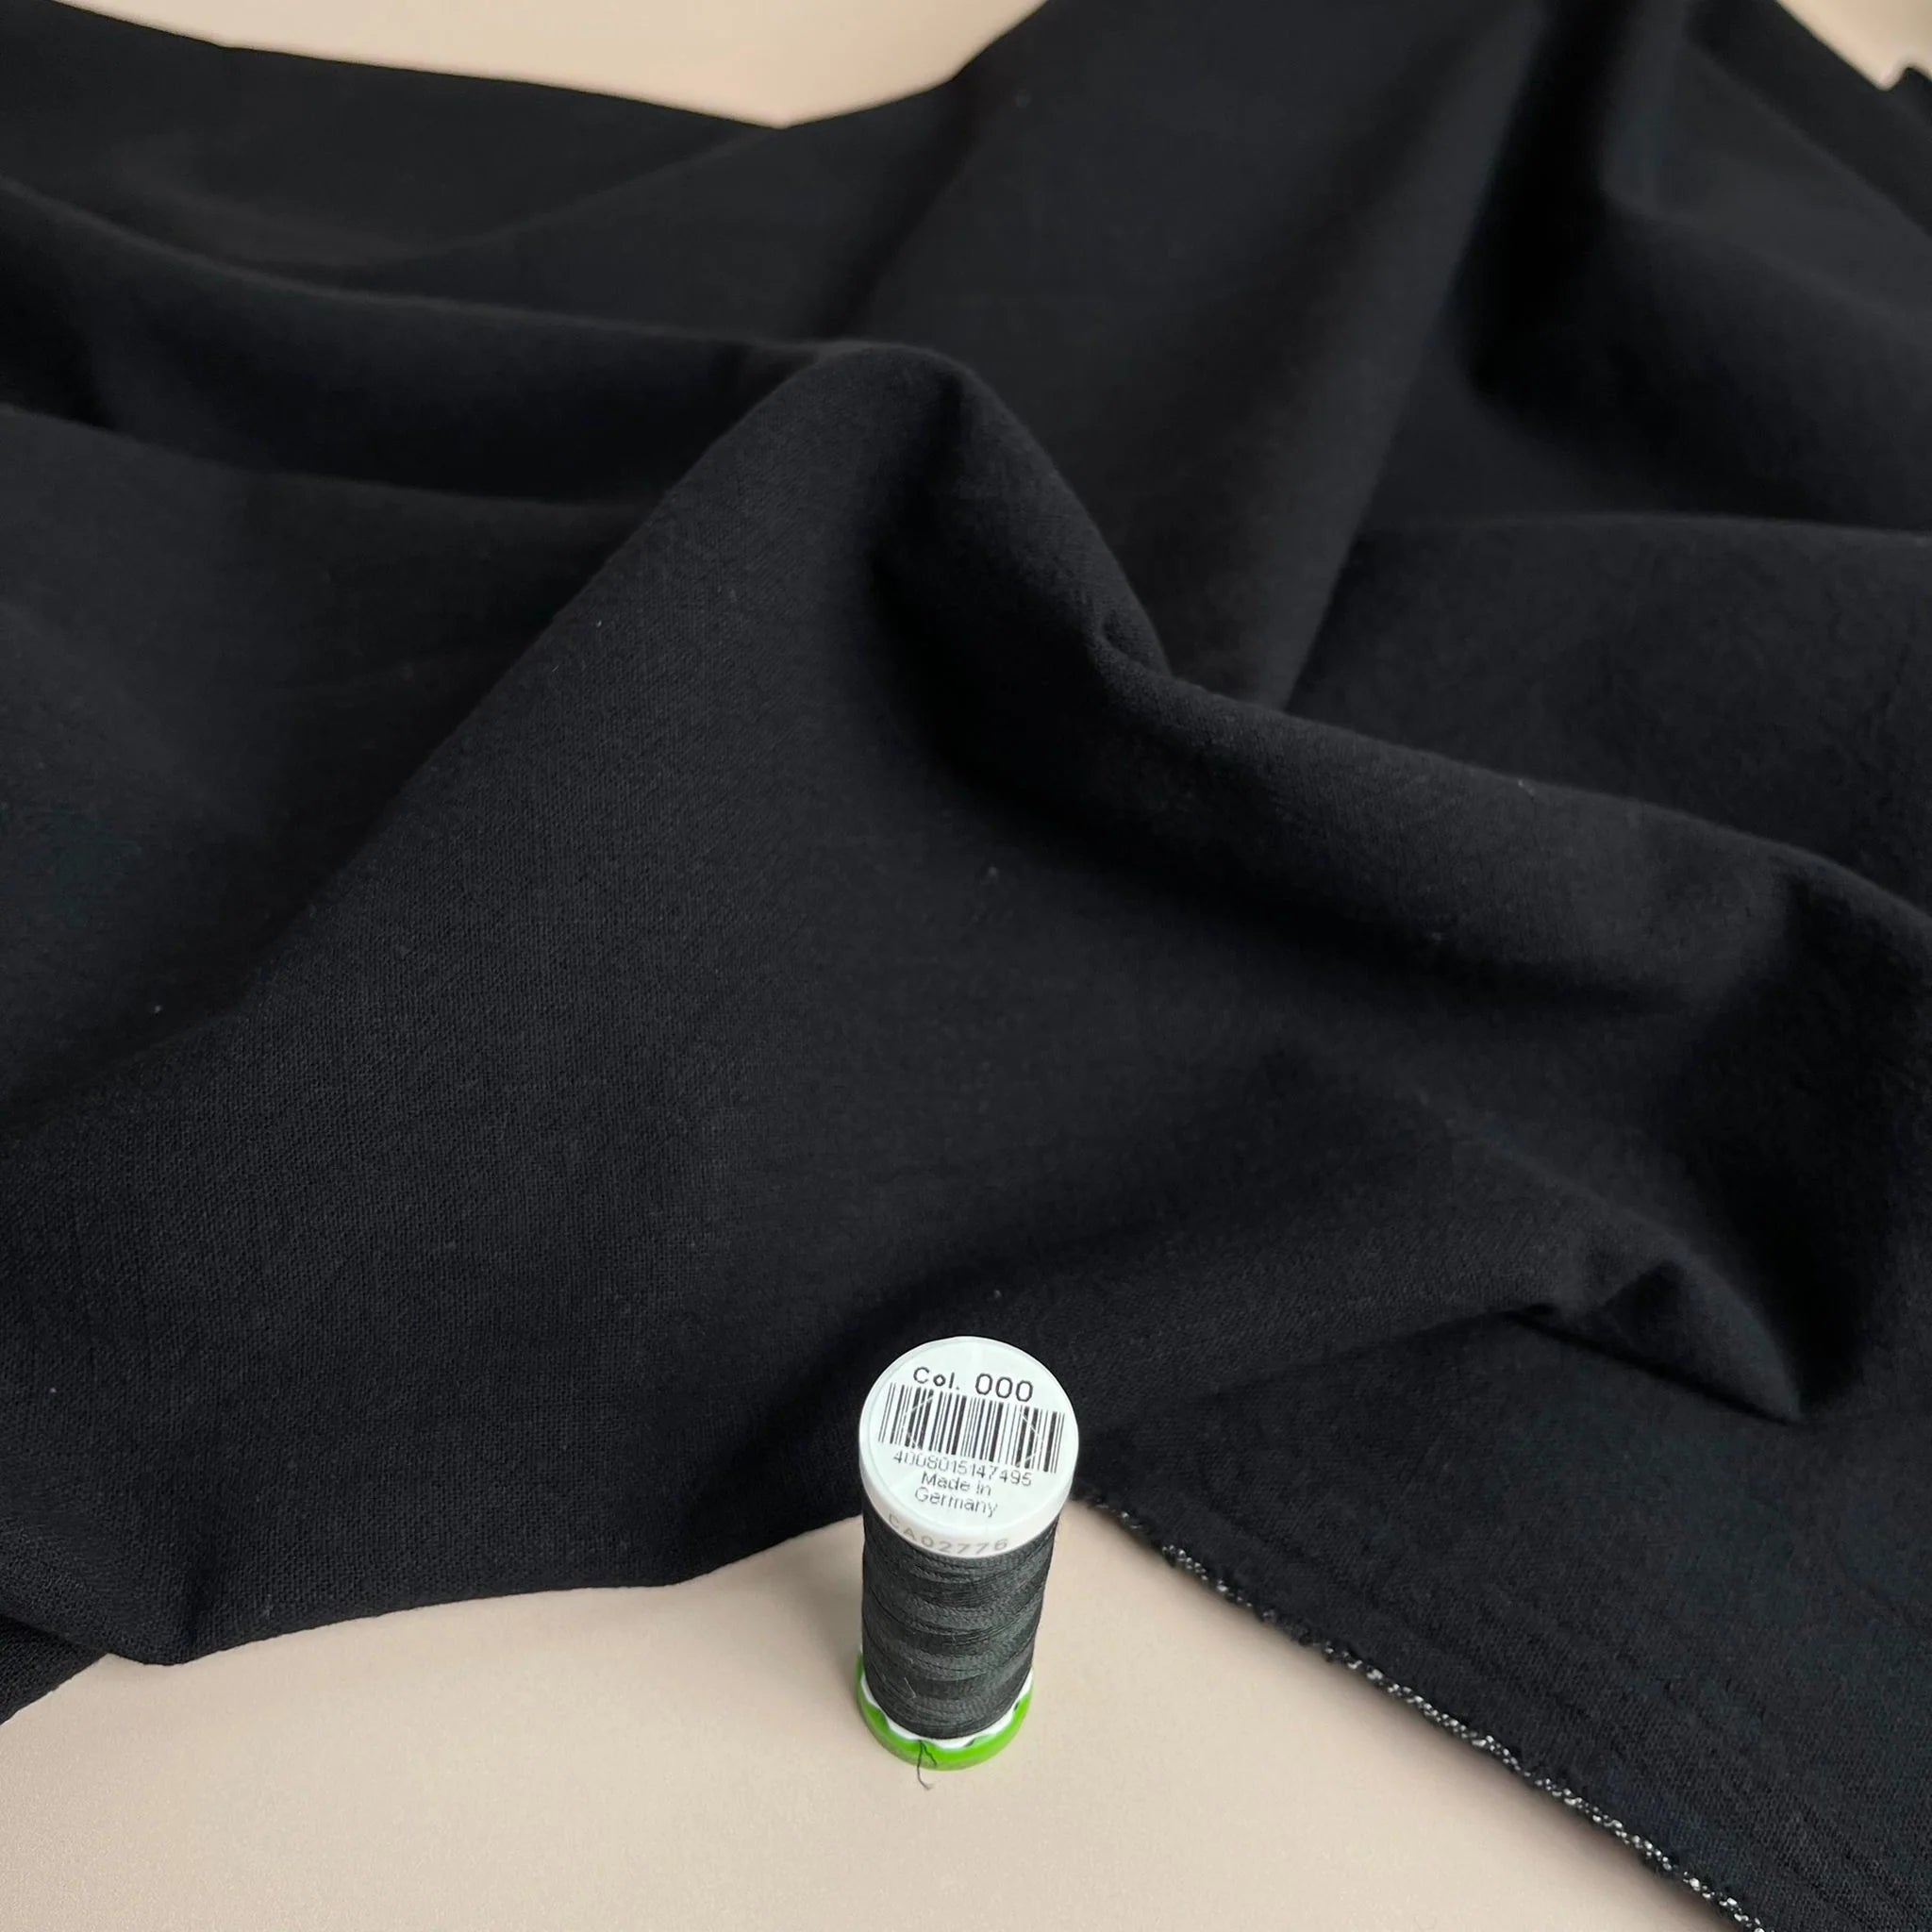 Sewing Kit - Free Range Slacks in Black Washed Cotton